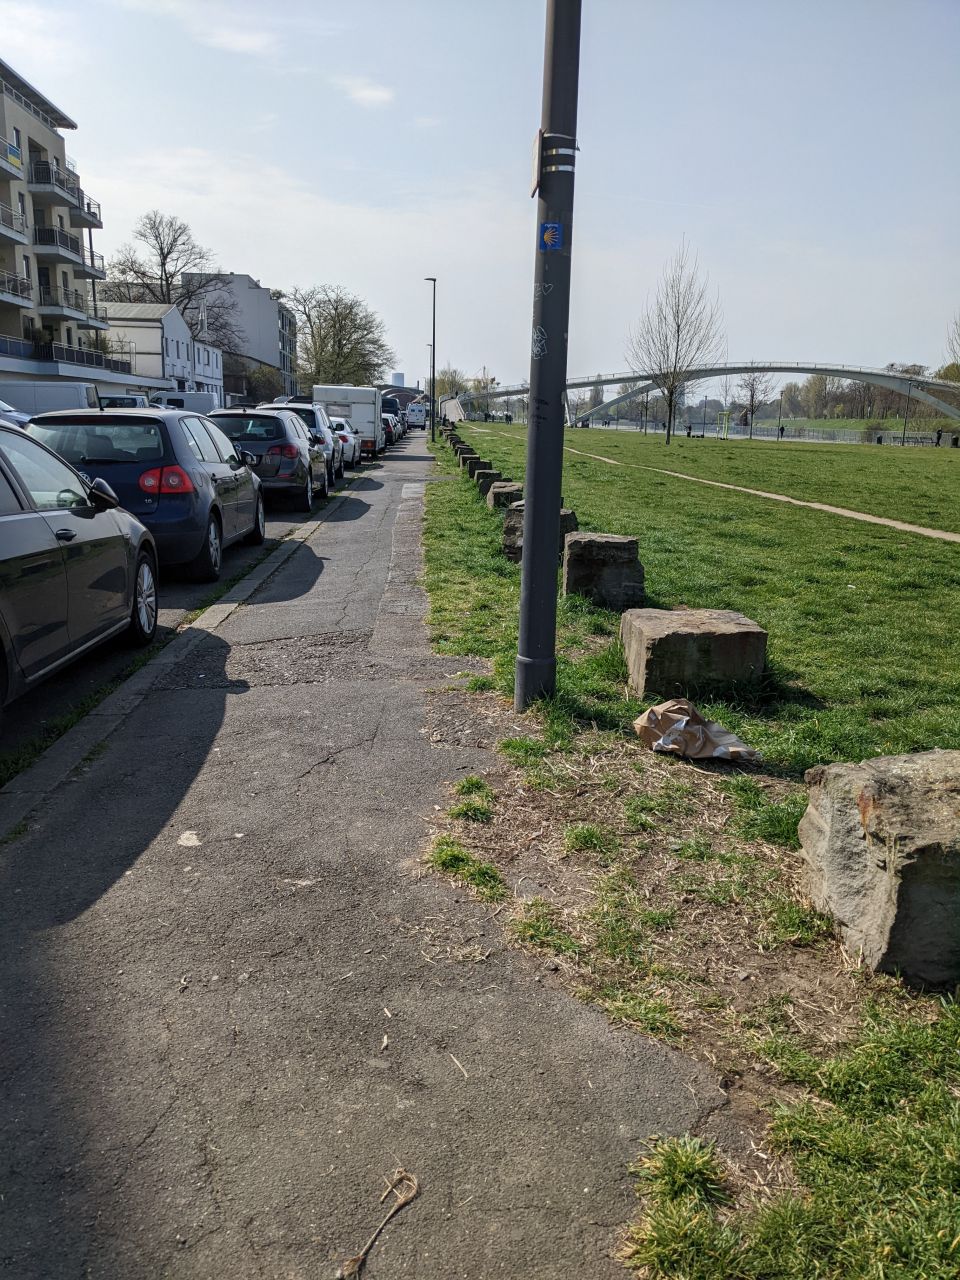 Gehweg am Rheinufer. Links vom Gehweg parken Autos. Rechts vom Gehweg ist eine grüne Wiese, die von großen Steinen abgegrenzt wird. 